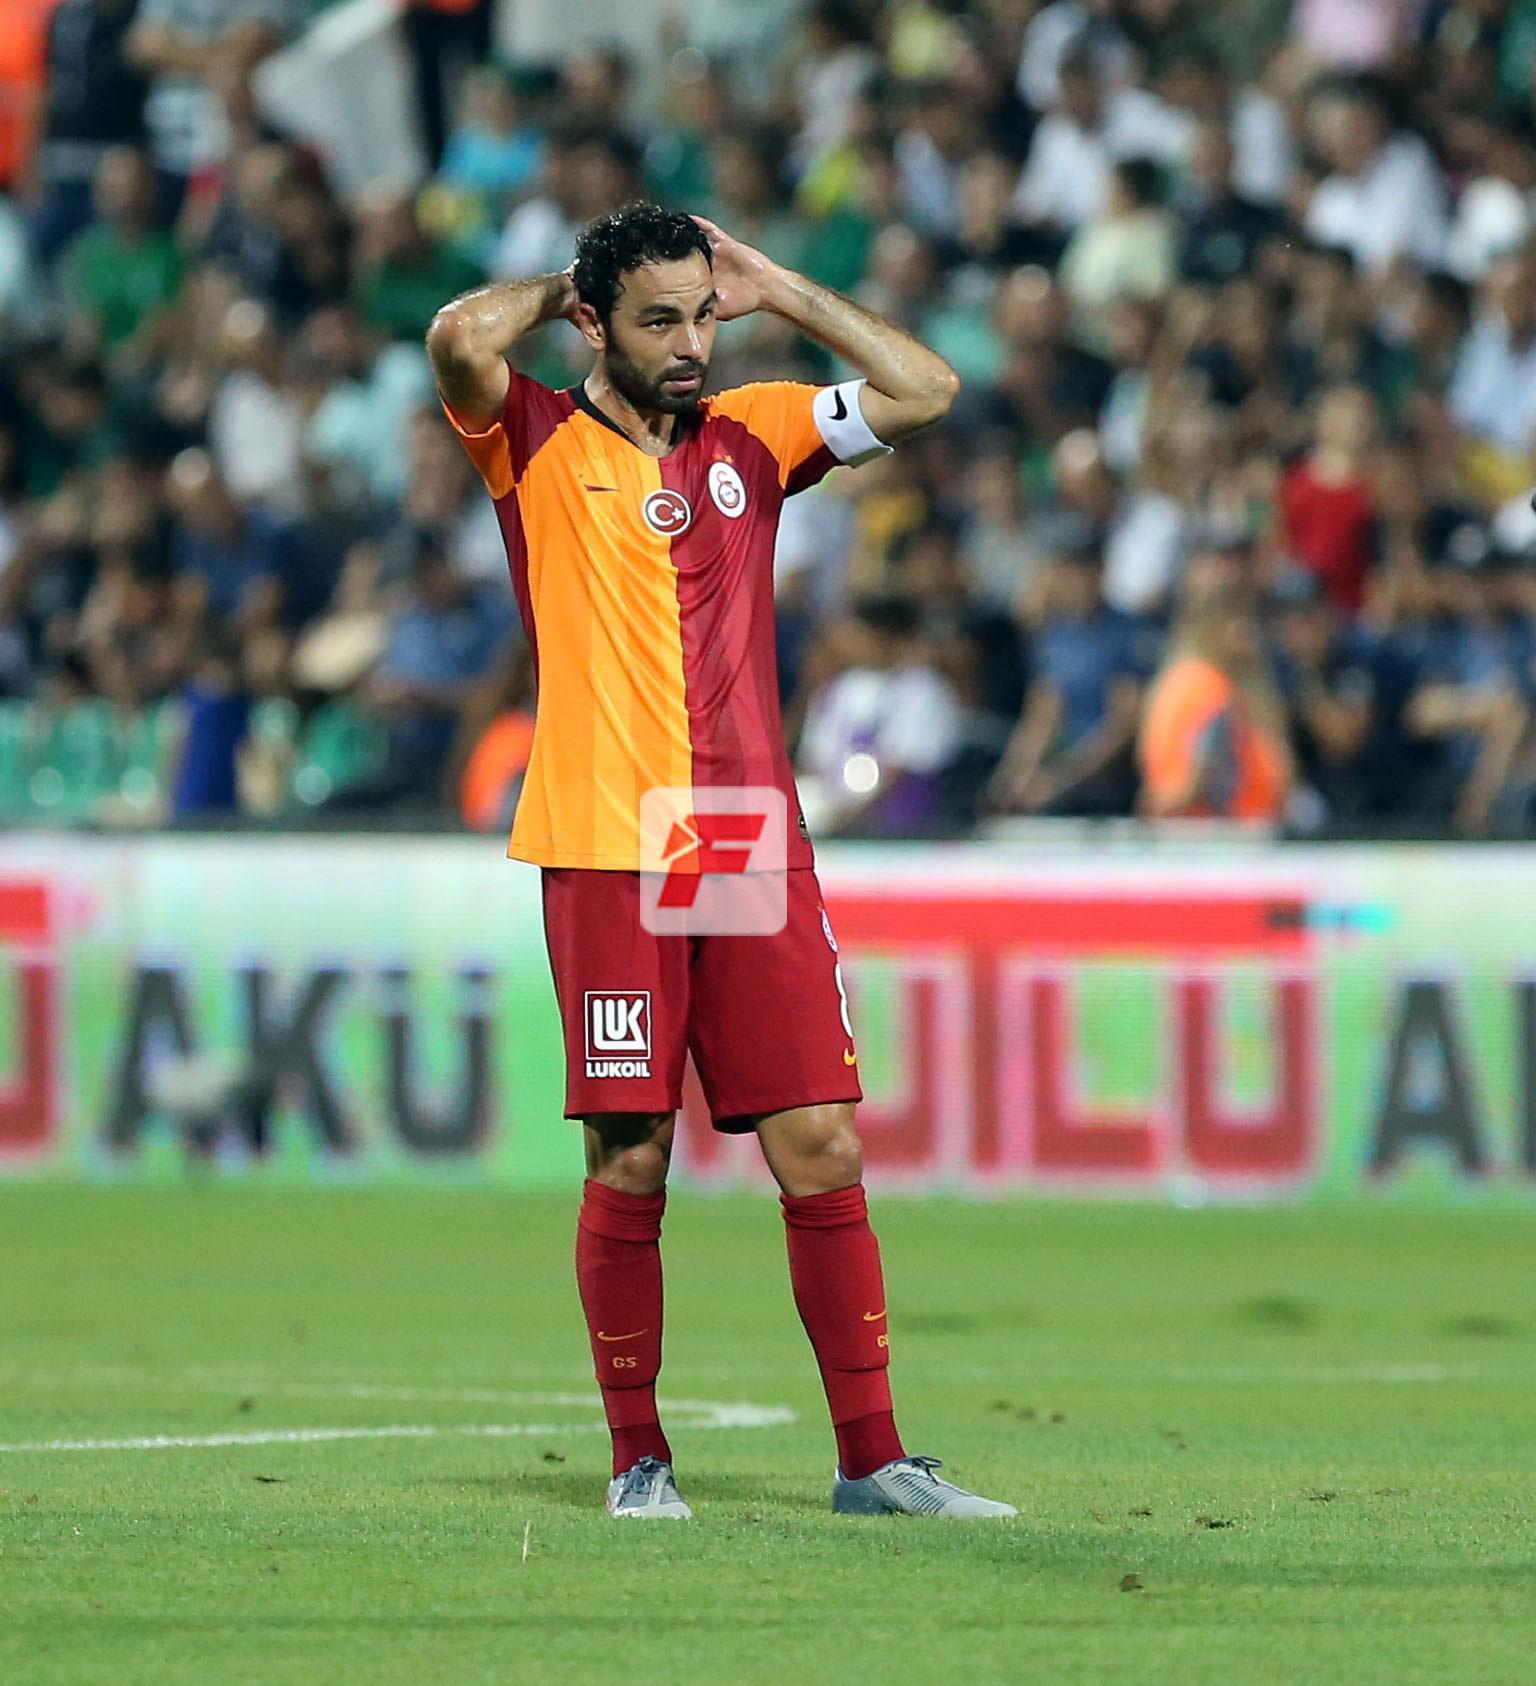 (ÖZET) Denizlispor - Galatasaray maç sonucu: 2-0